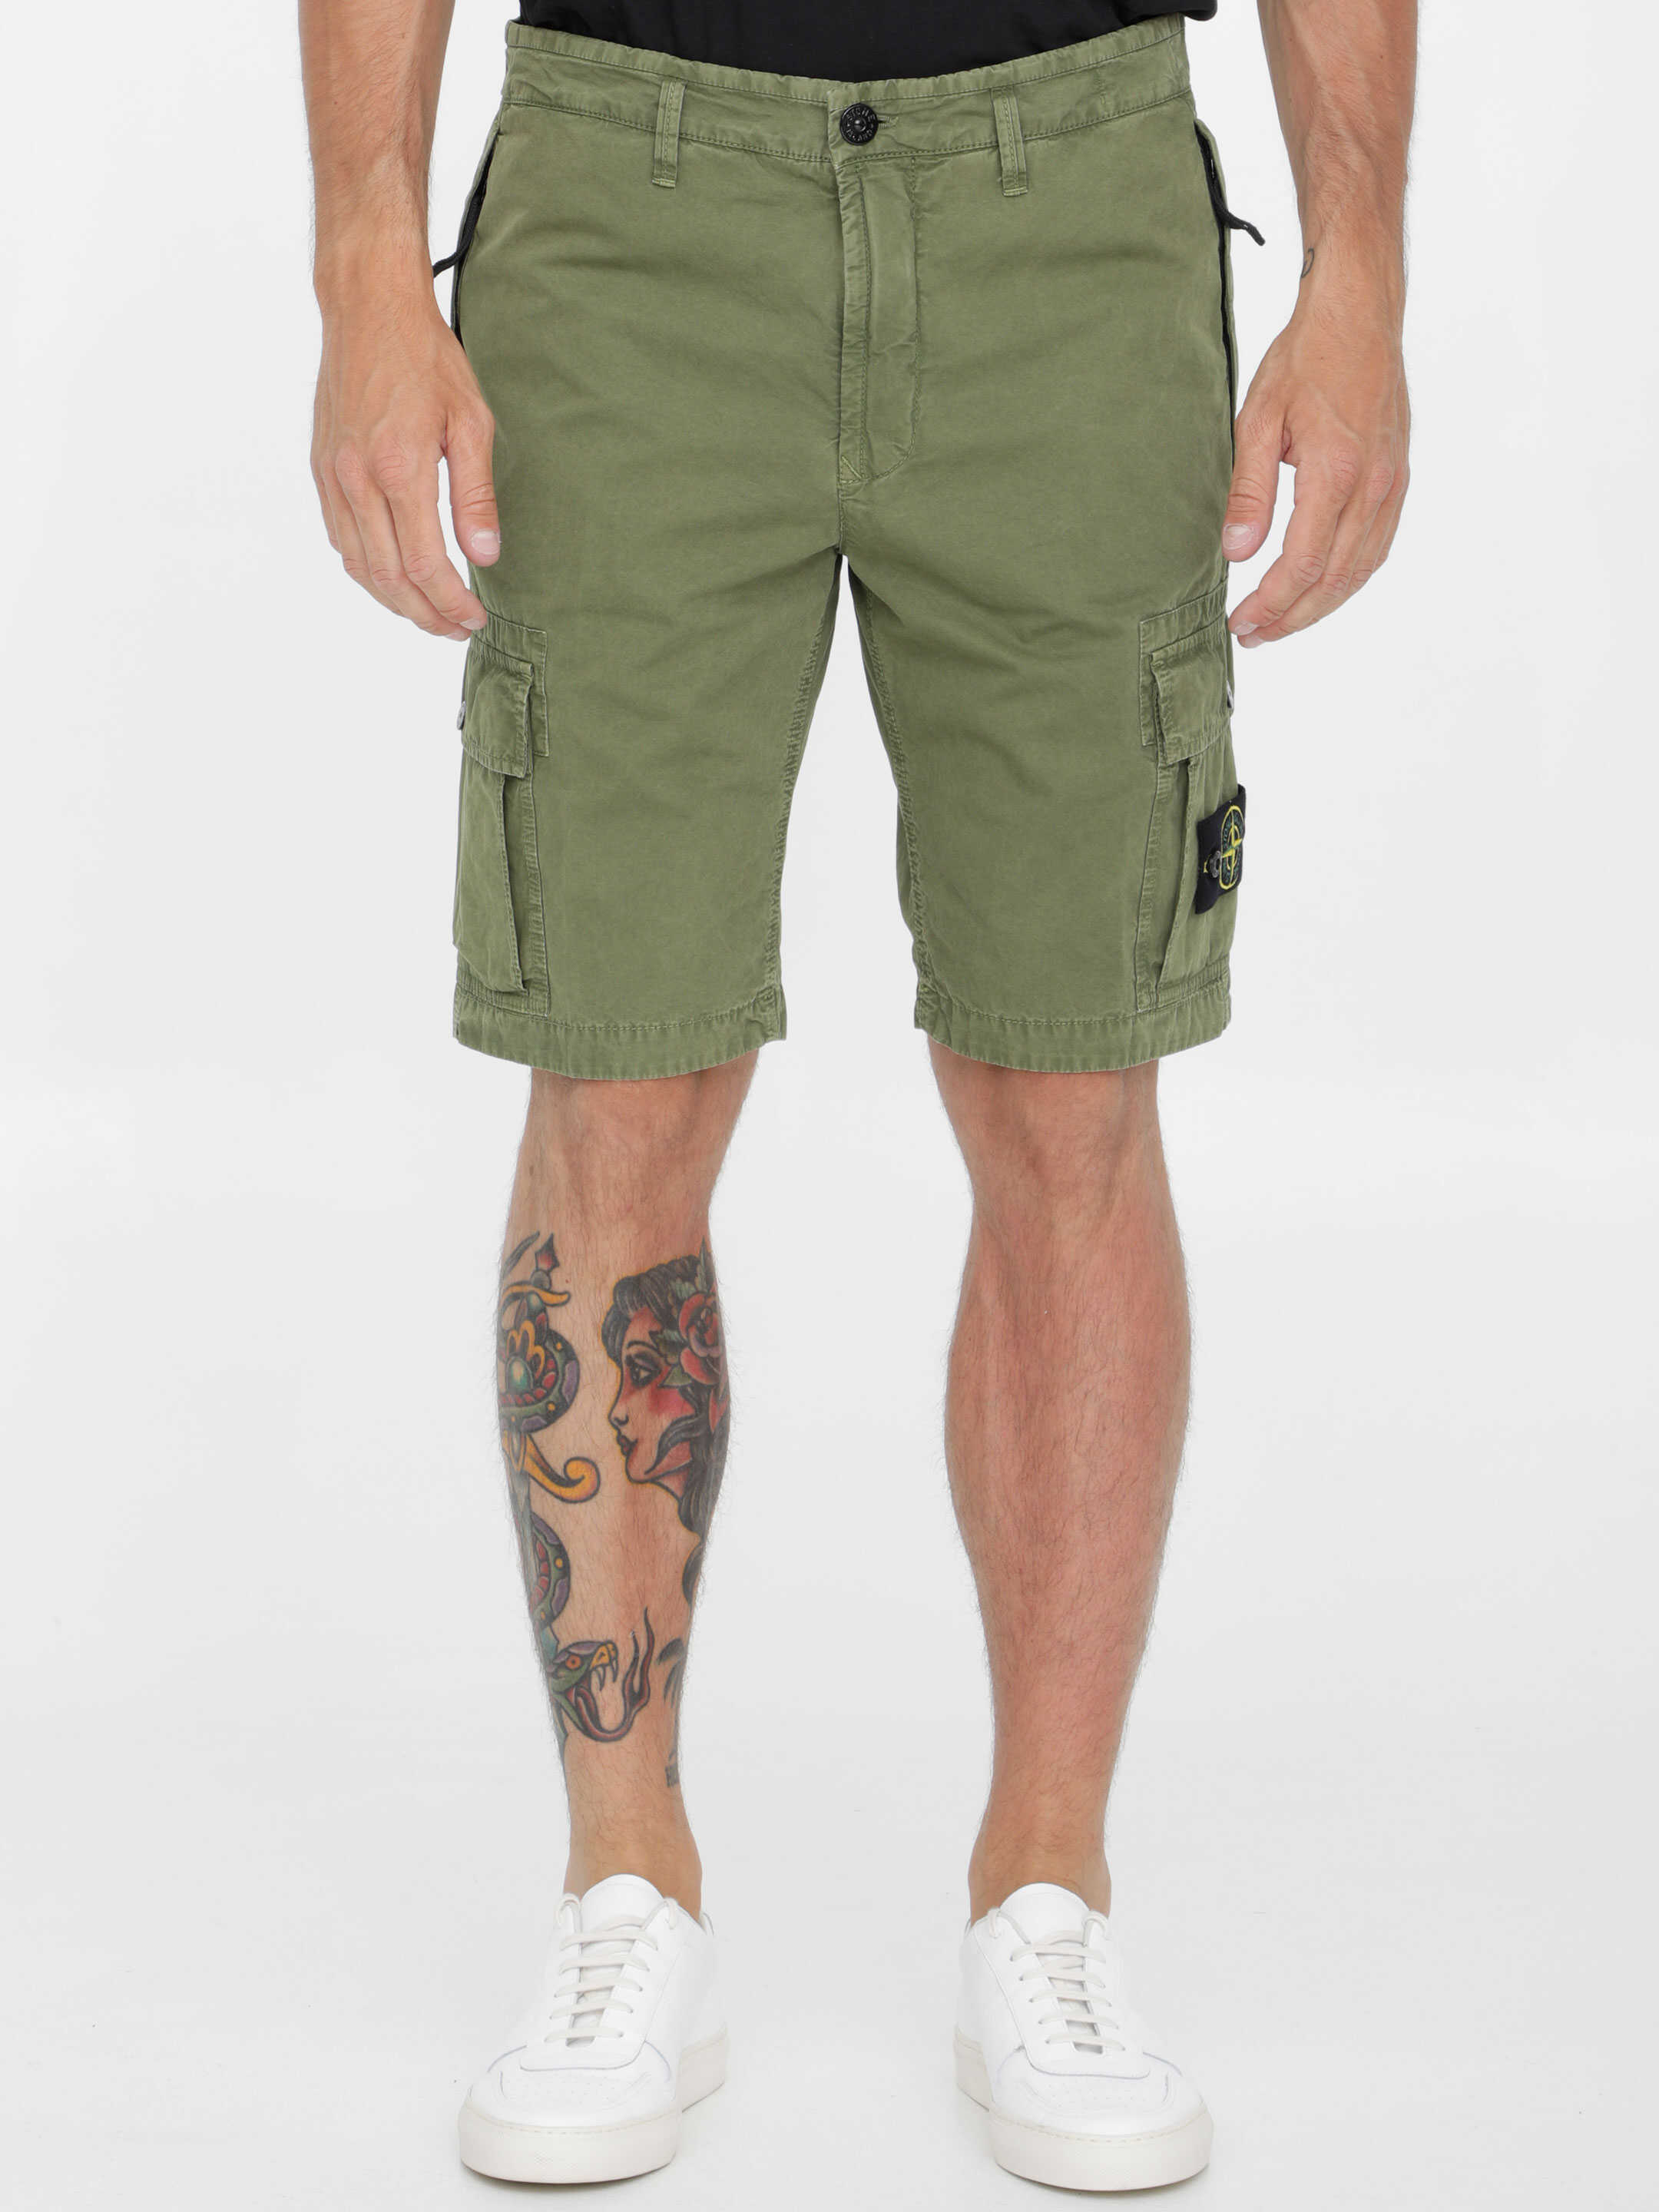 Stone Island Military Green Bermuda Shorts N/A image1